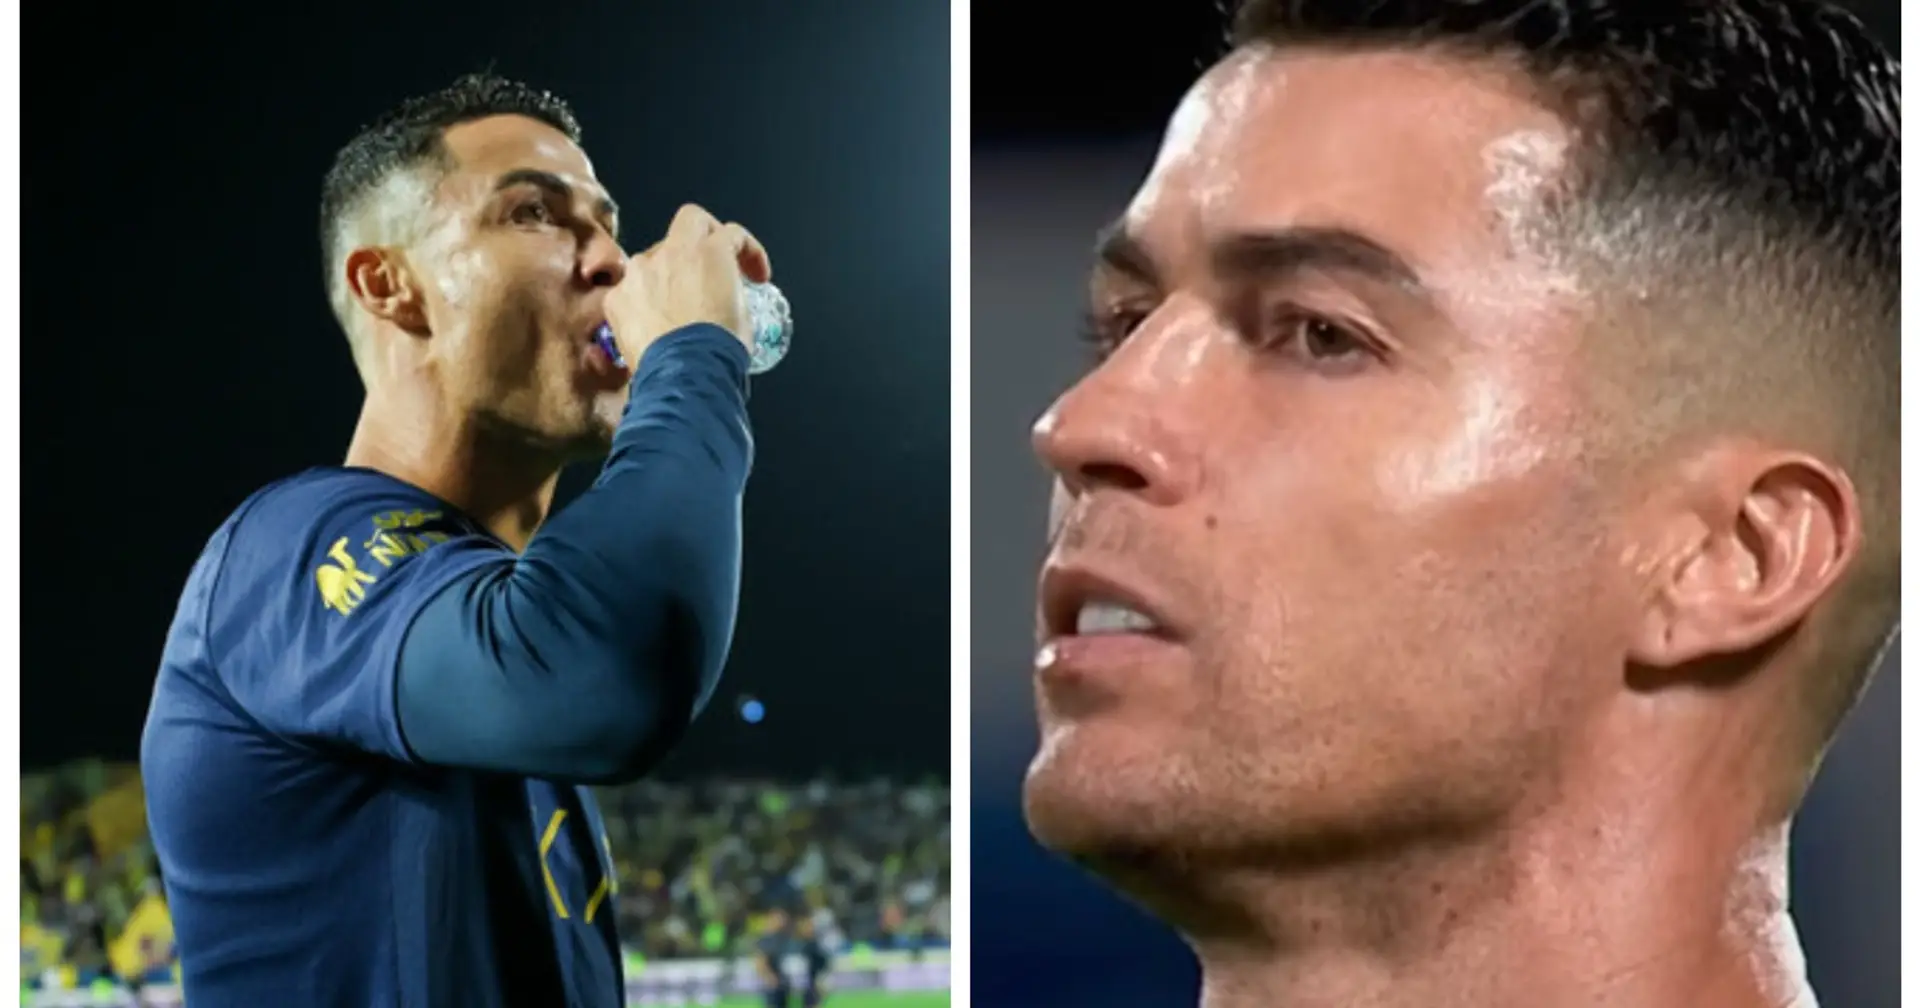 "Du bist der Beste": Lippenleser verrät, was Cristiano Ronaldo zu sich selbst sagte, bevor er seinen berühmten Freistoß schoss